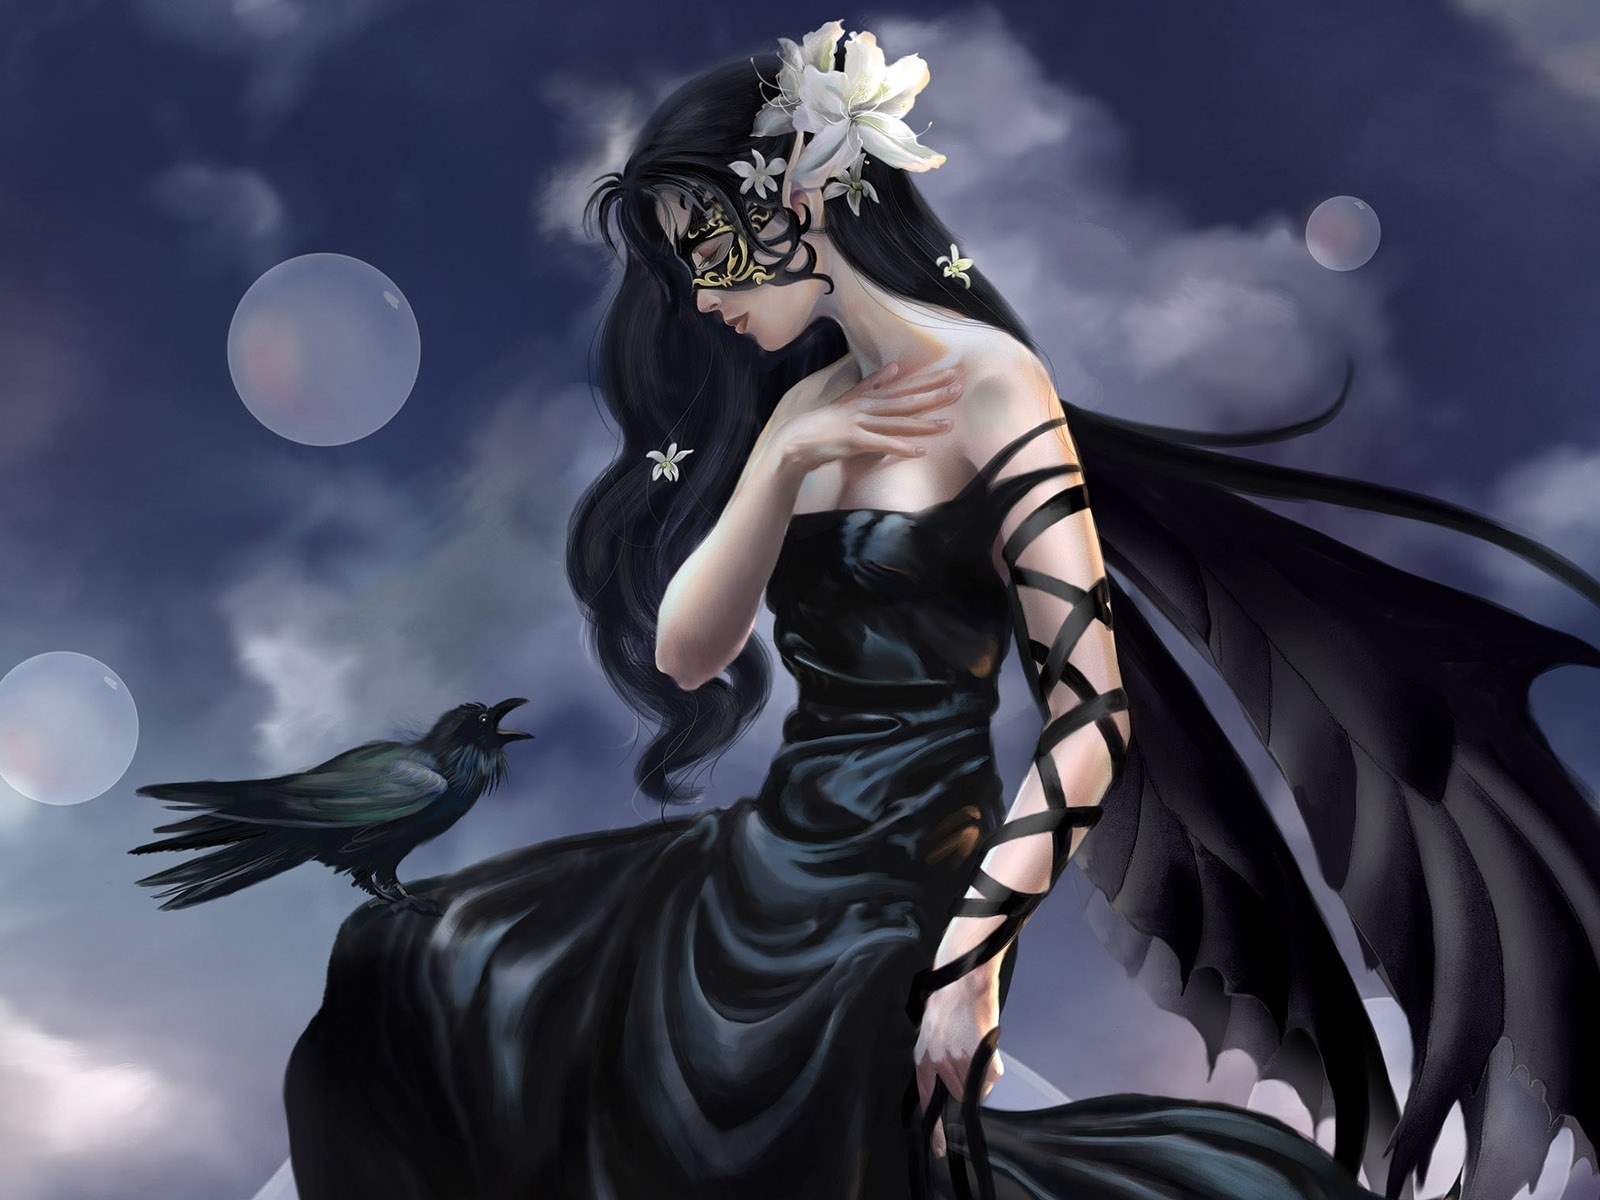 Fantasy Girl Raven for 1600 x 1200 resolution